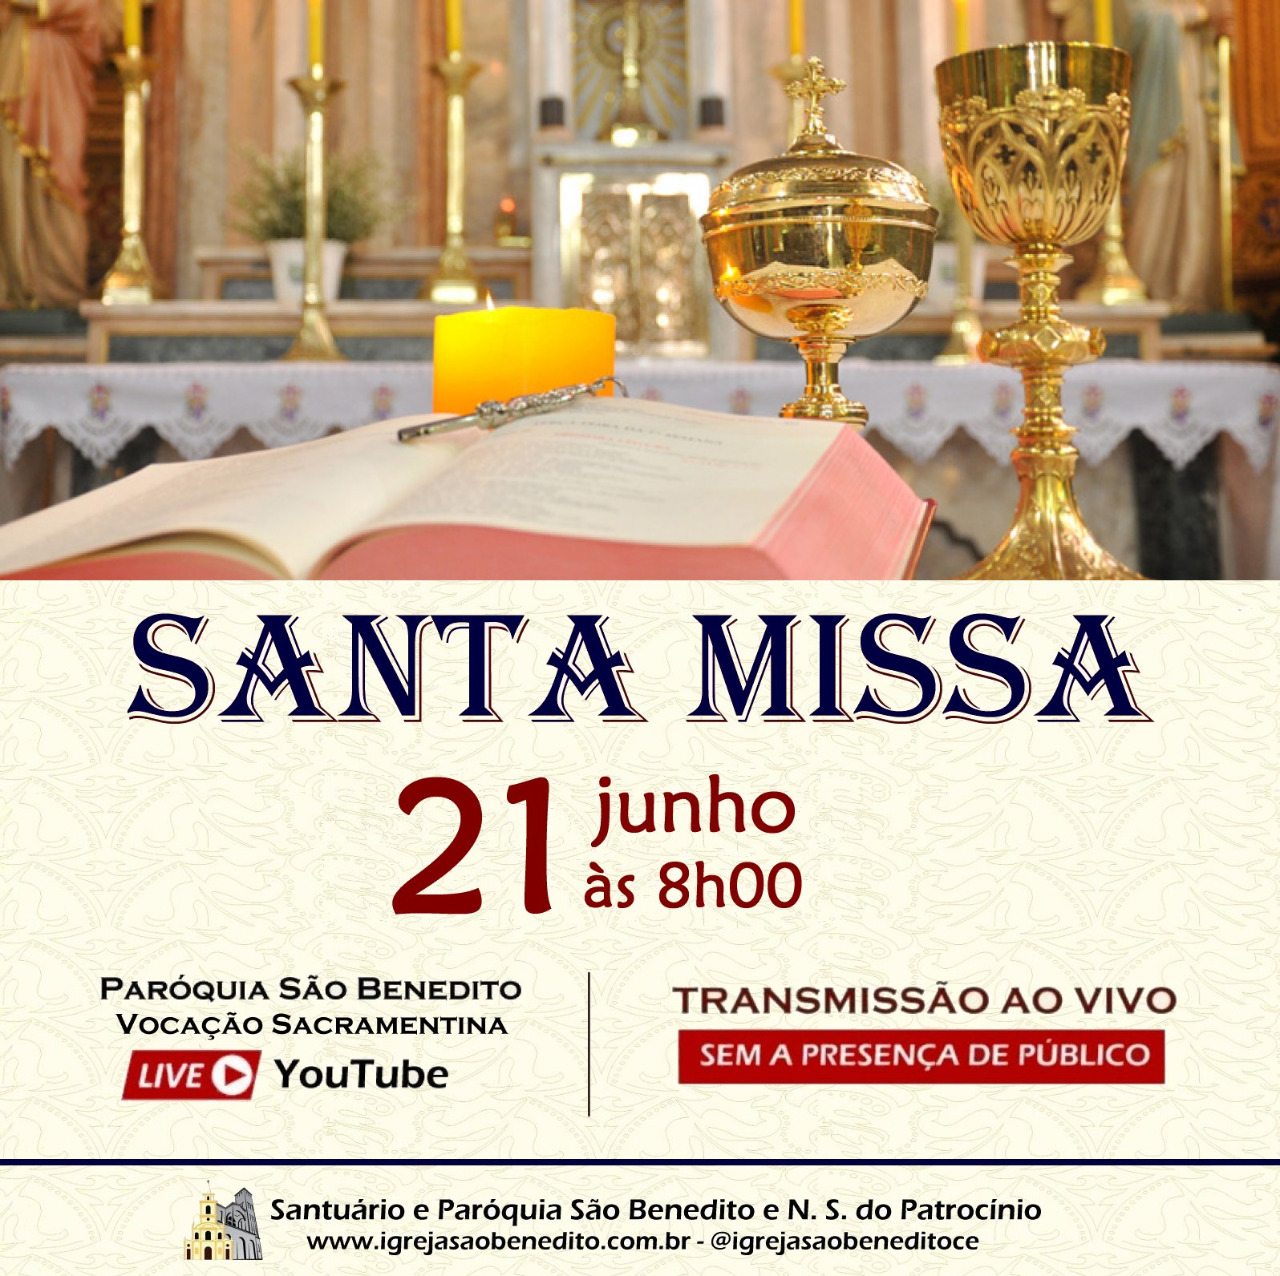 Santa Missa com transmissão ao vivo 21/06. Participe!